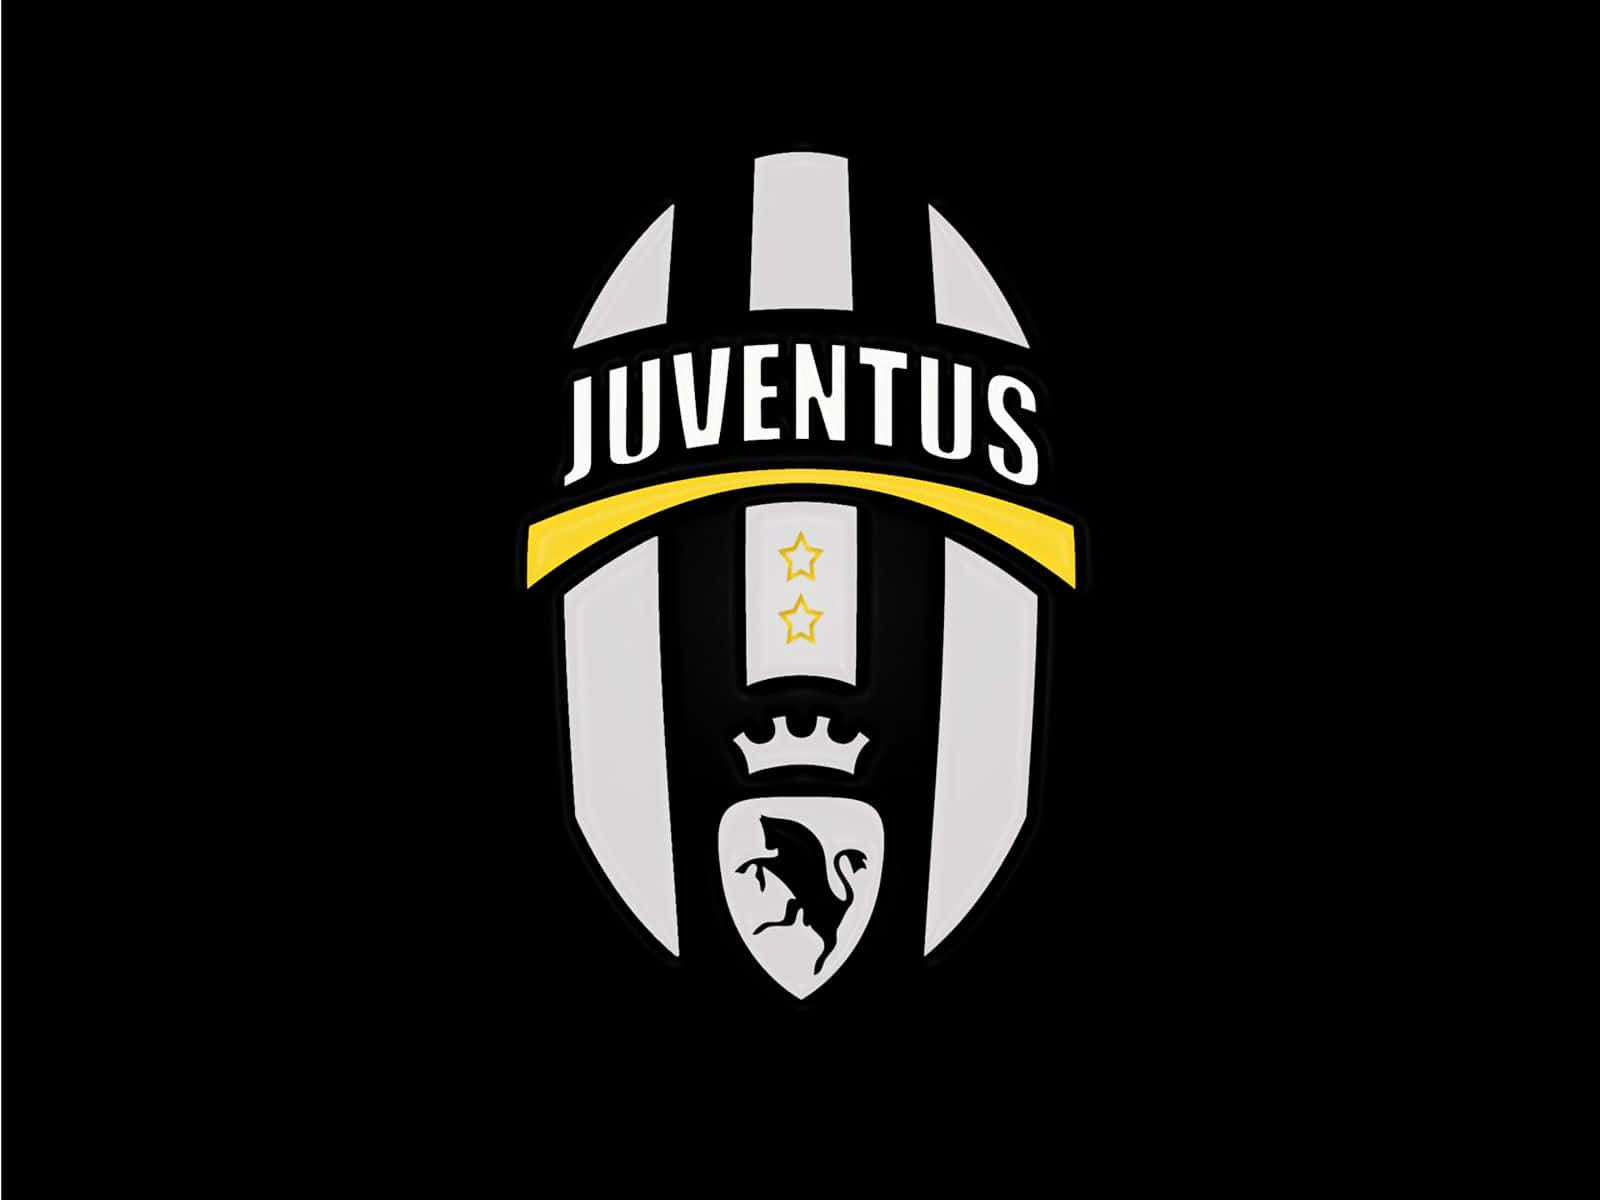 L'immortaleemblema Della Juventus Brilla Vivido Nelle Menti Dei Tifosi Di Calcio!